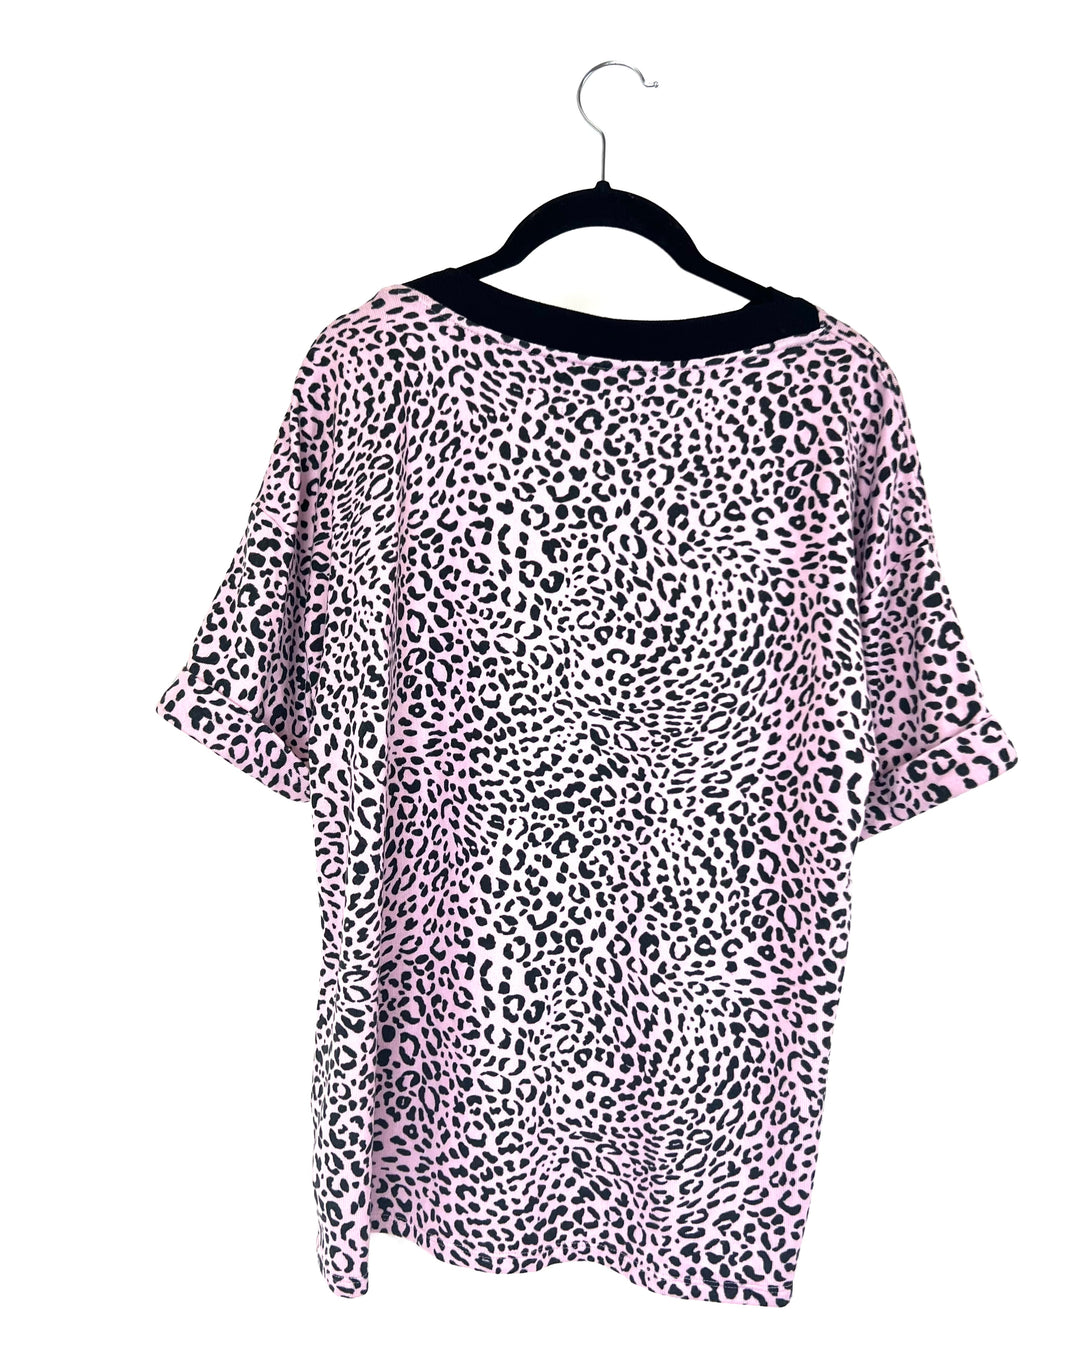 Soft Pink Leopard Sleep T-Shirt - Small